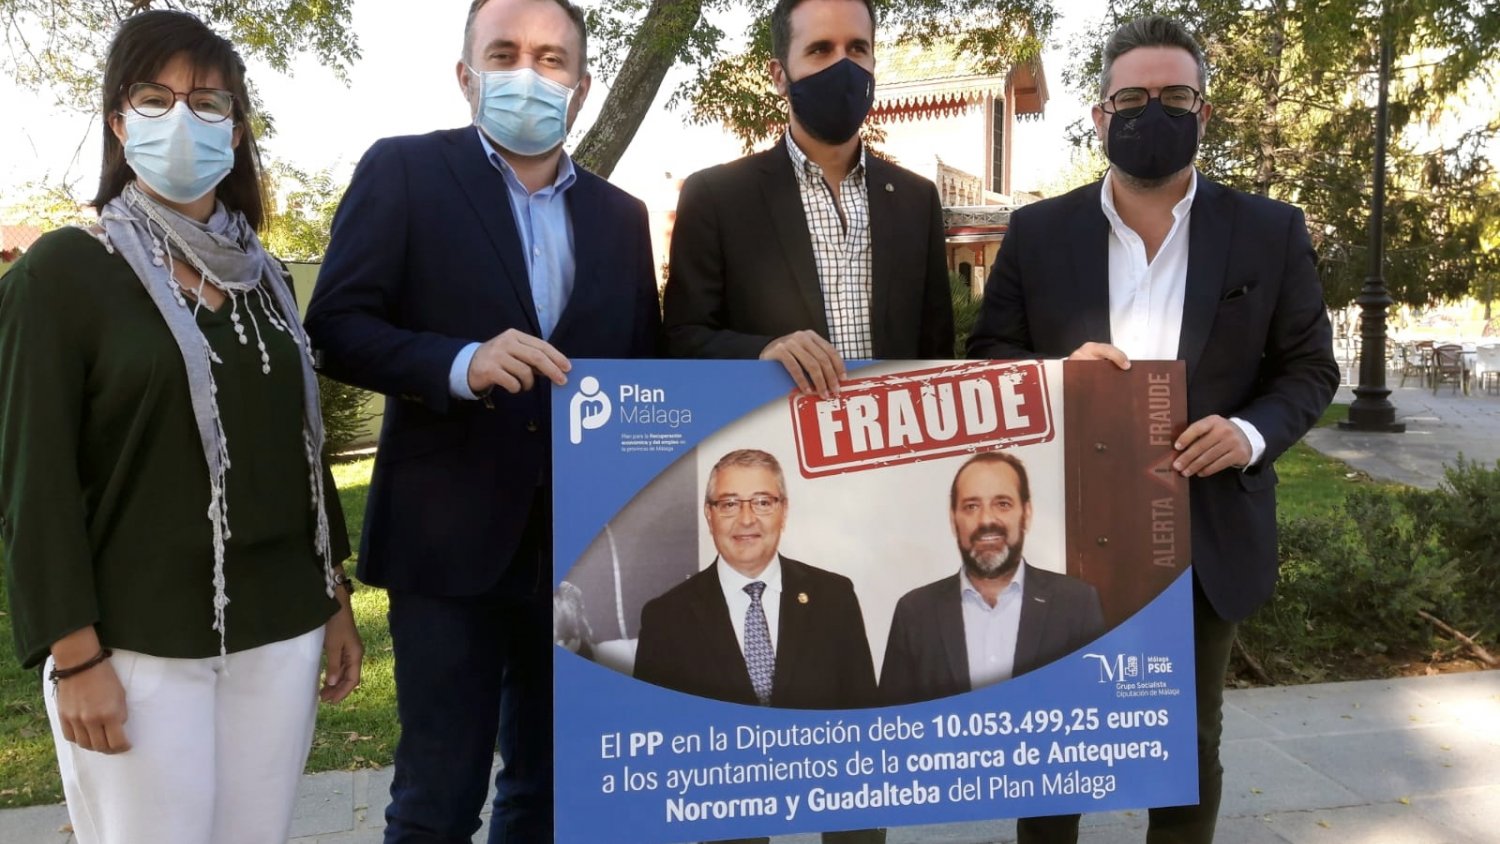 PSOE denuncia que PP en Diputación debe 10 millones del Plan Málaga a Antequera, Nororma y Guadalteba